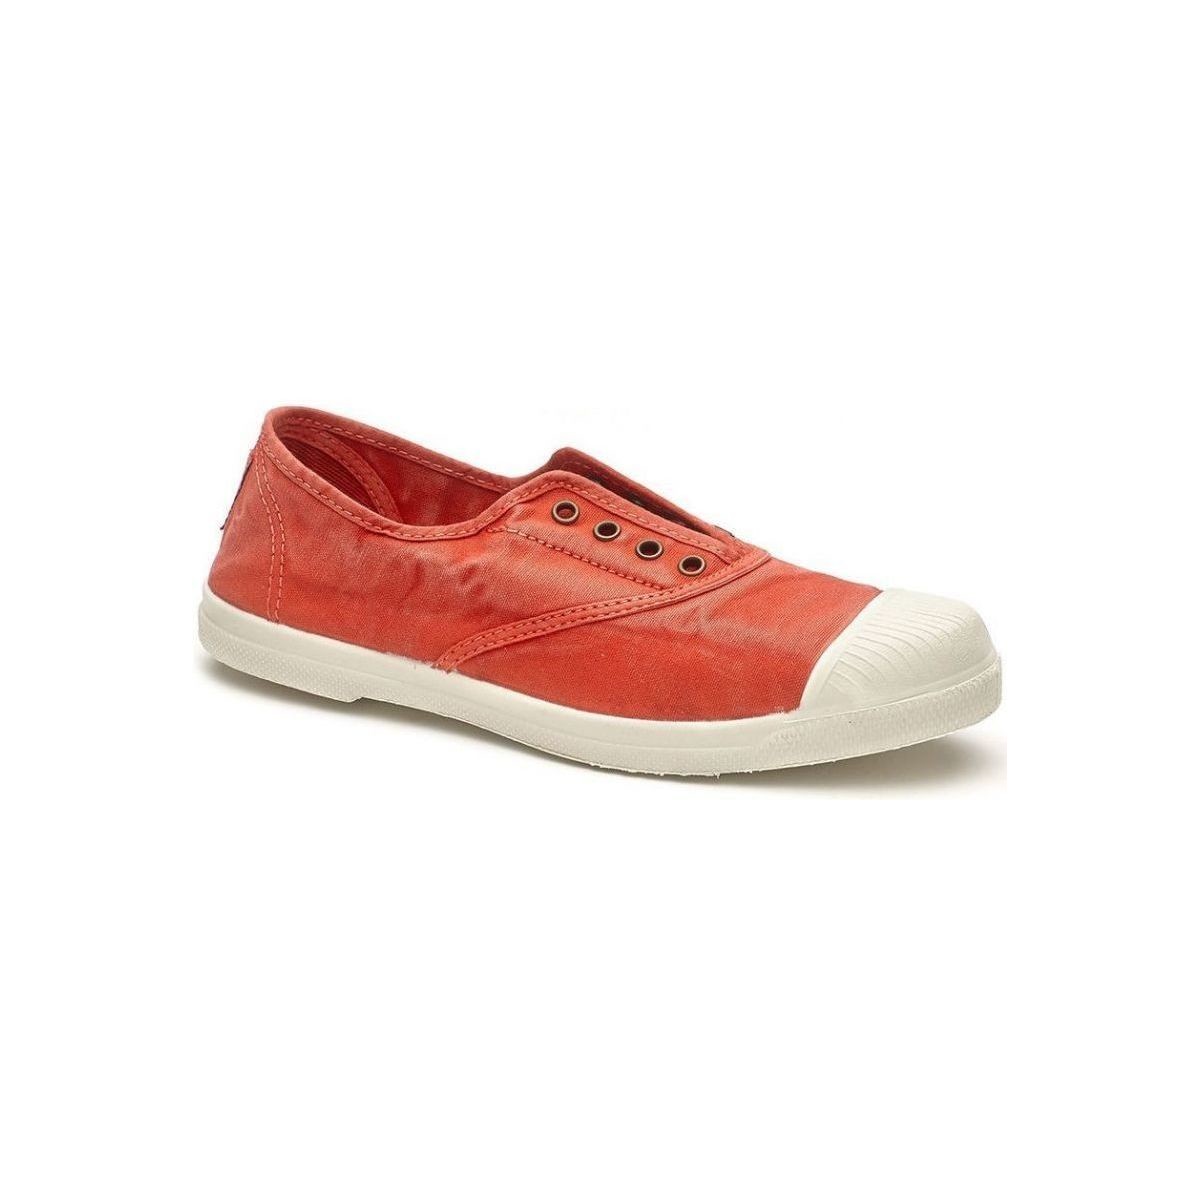 Schuhe Damen Leinen-Pantoletten mit gefloch Natural World 102E - Rojo Rot